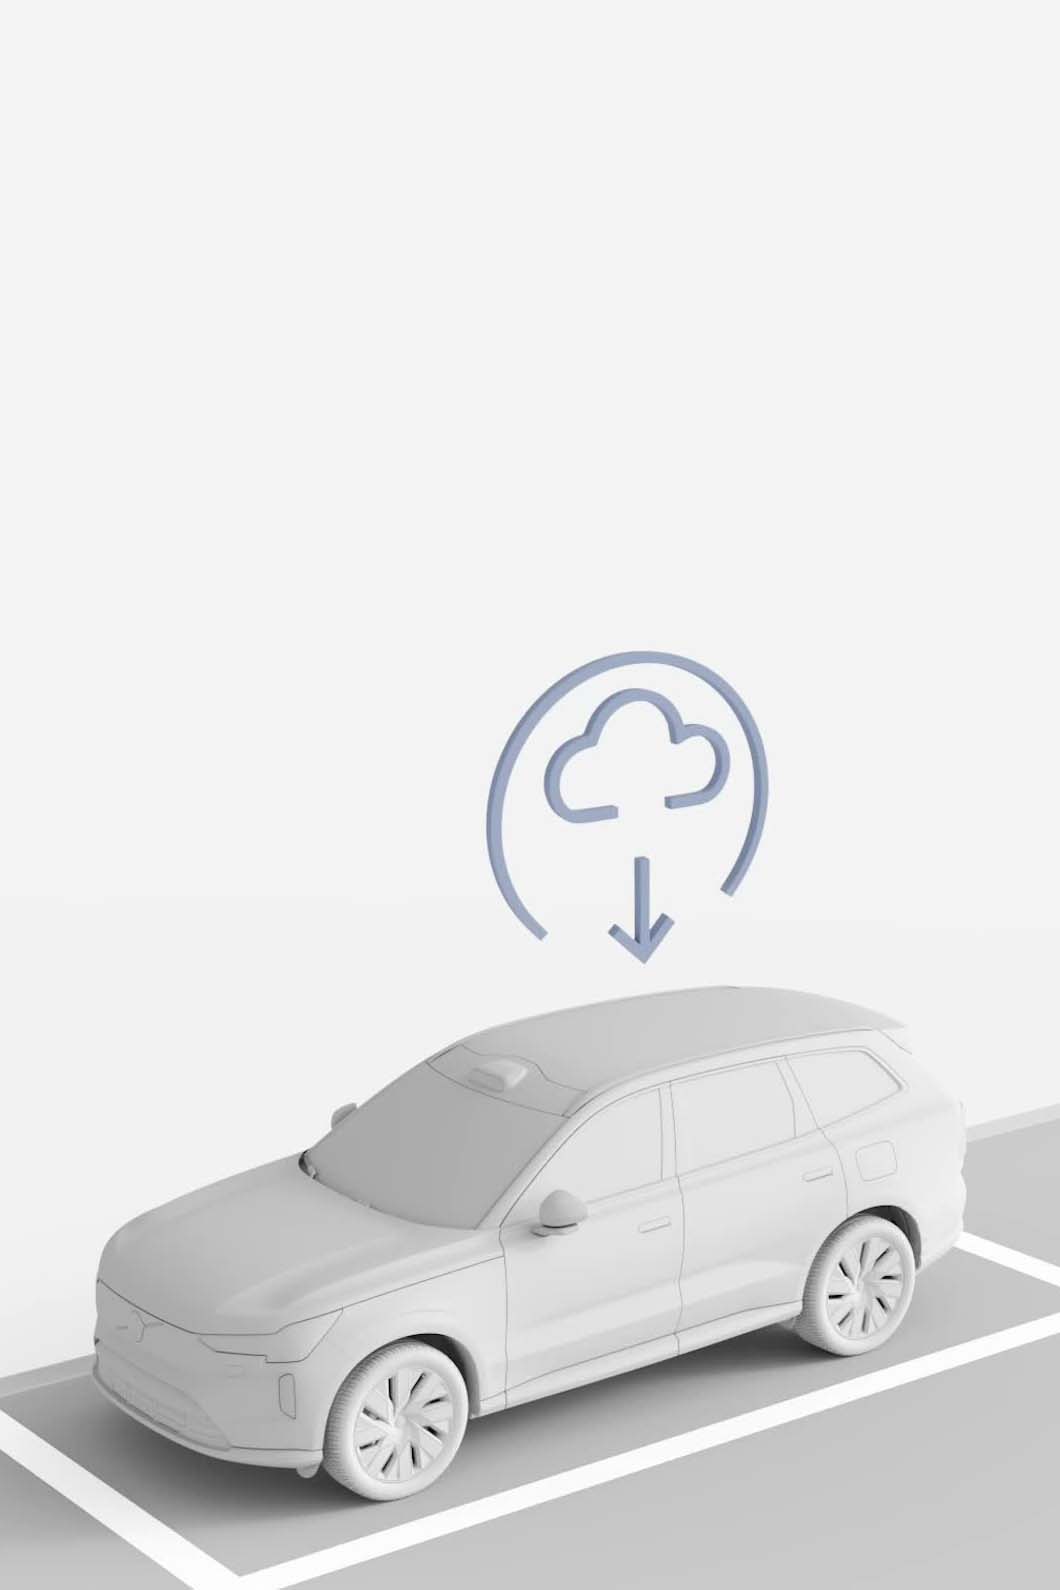 Ilustracija automobila Volvo koji dobija ažuriranje softvera sa oblaka.